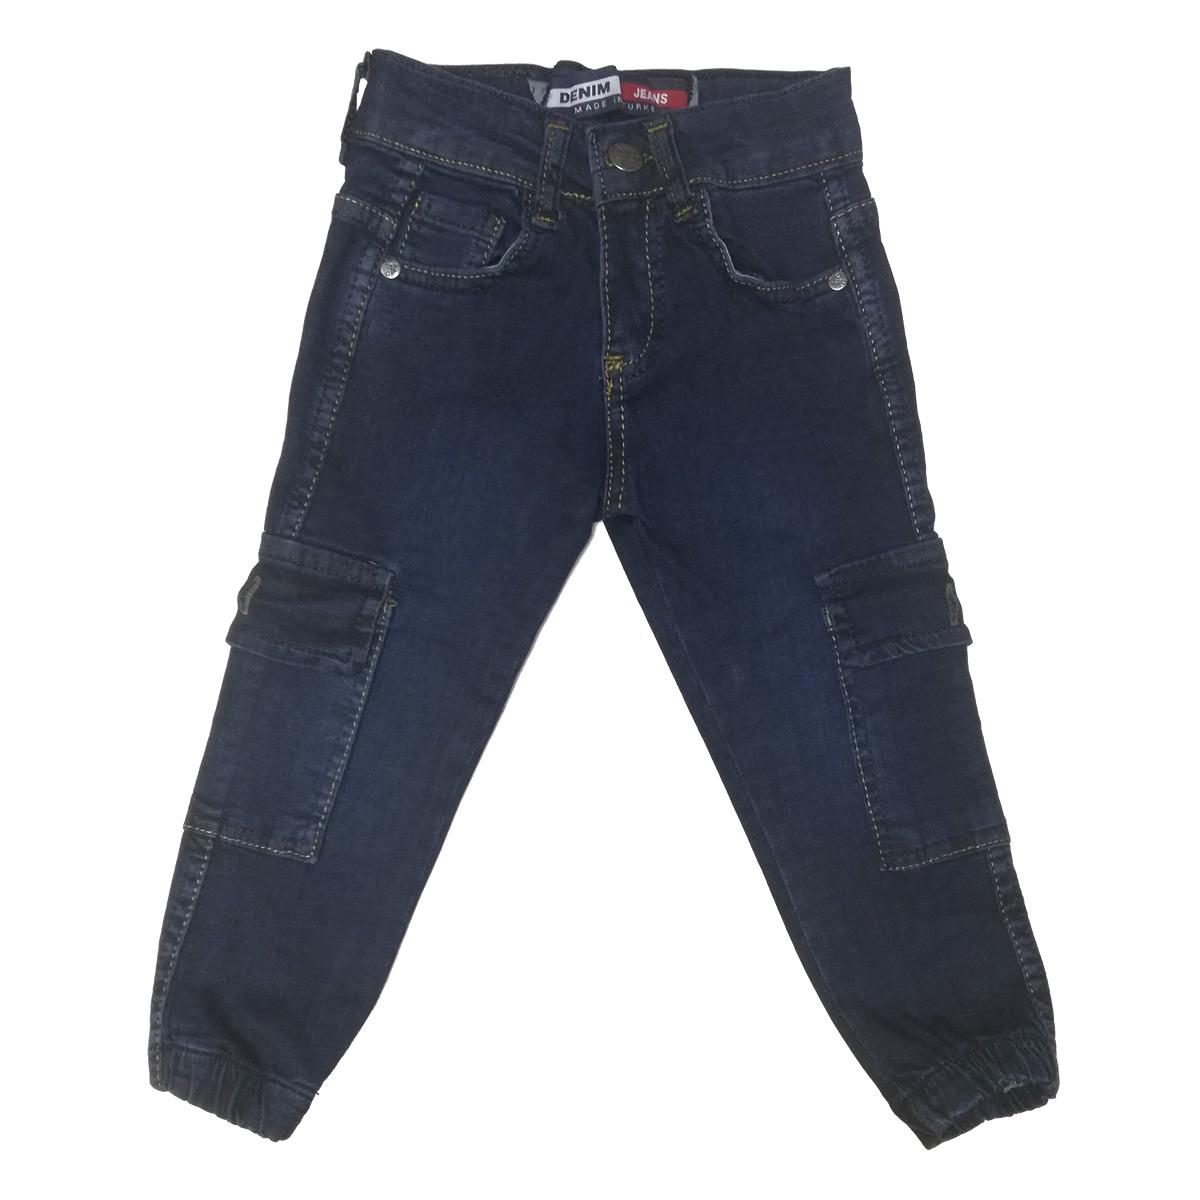 Дитячі джинси для хлопчика, сині (900-20), Dowes